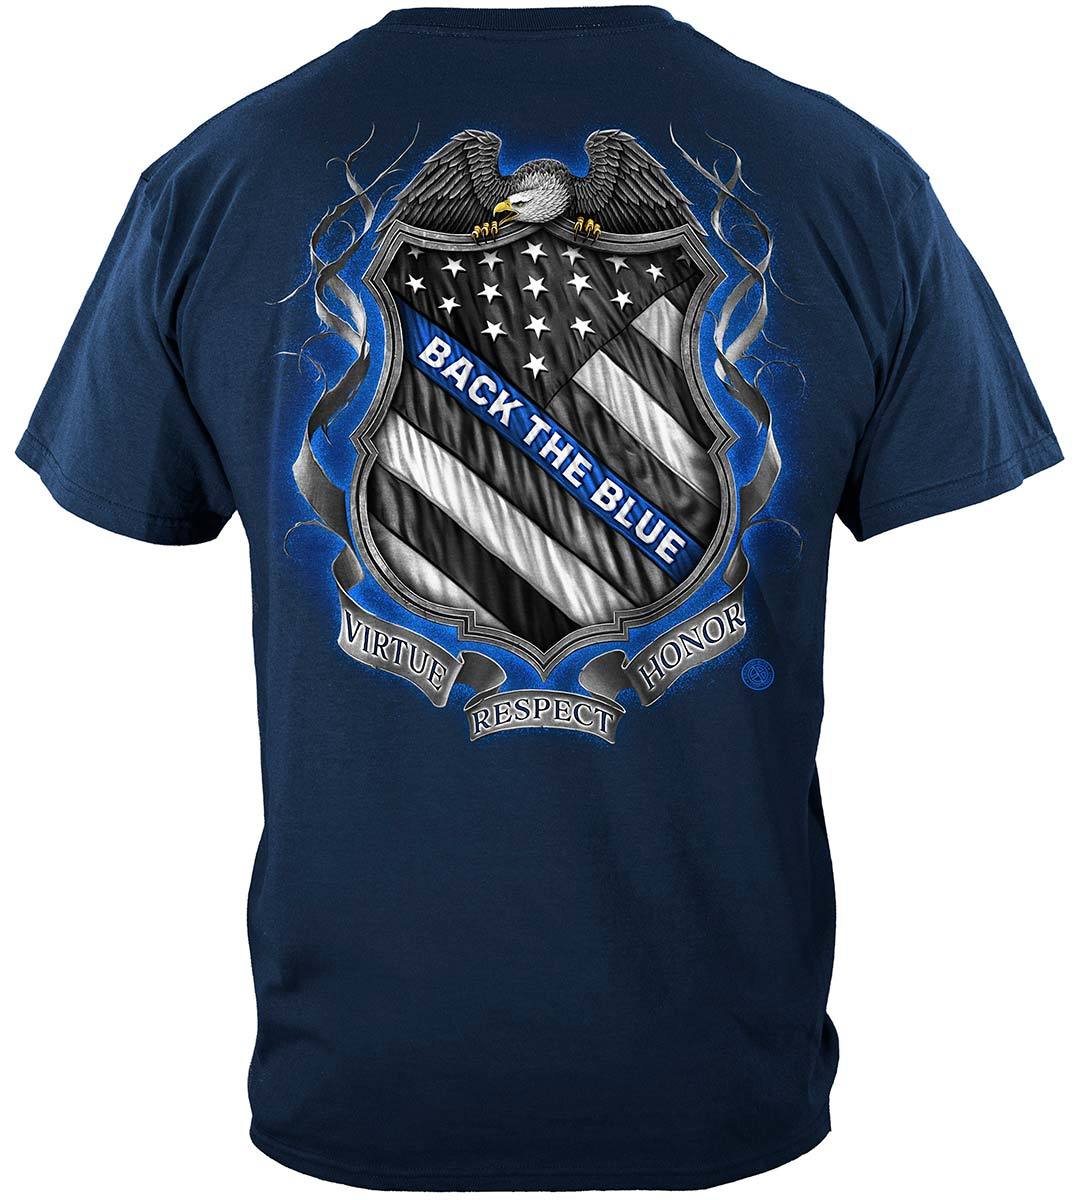 Law enforcement Back the Blue Virtue Respect Honor Premium T-Shirt